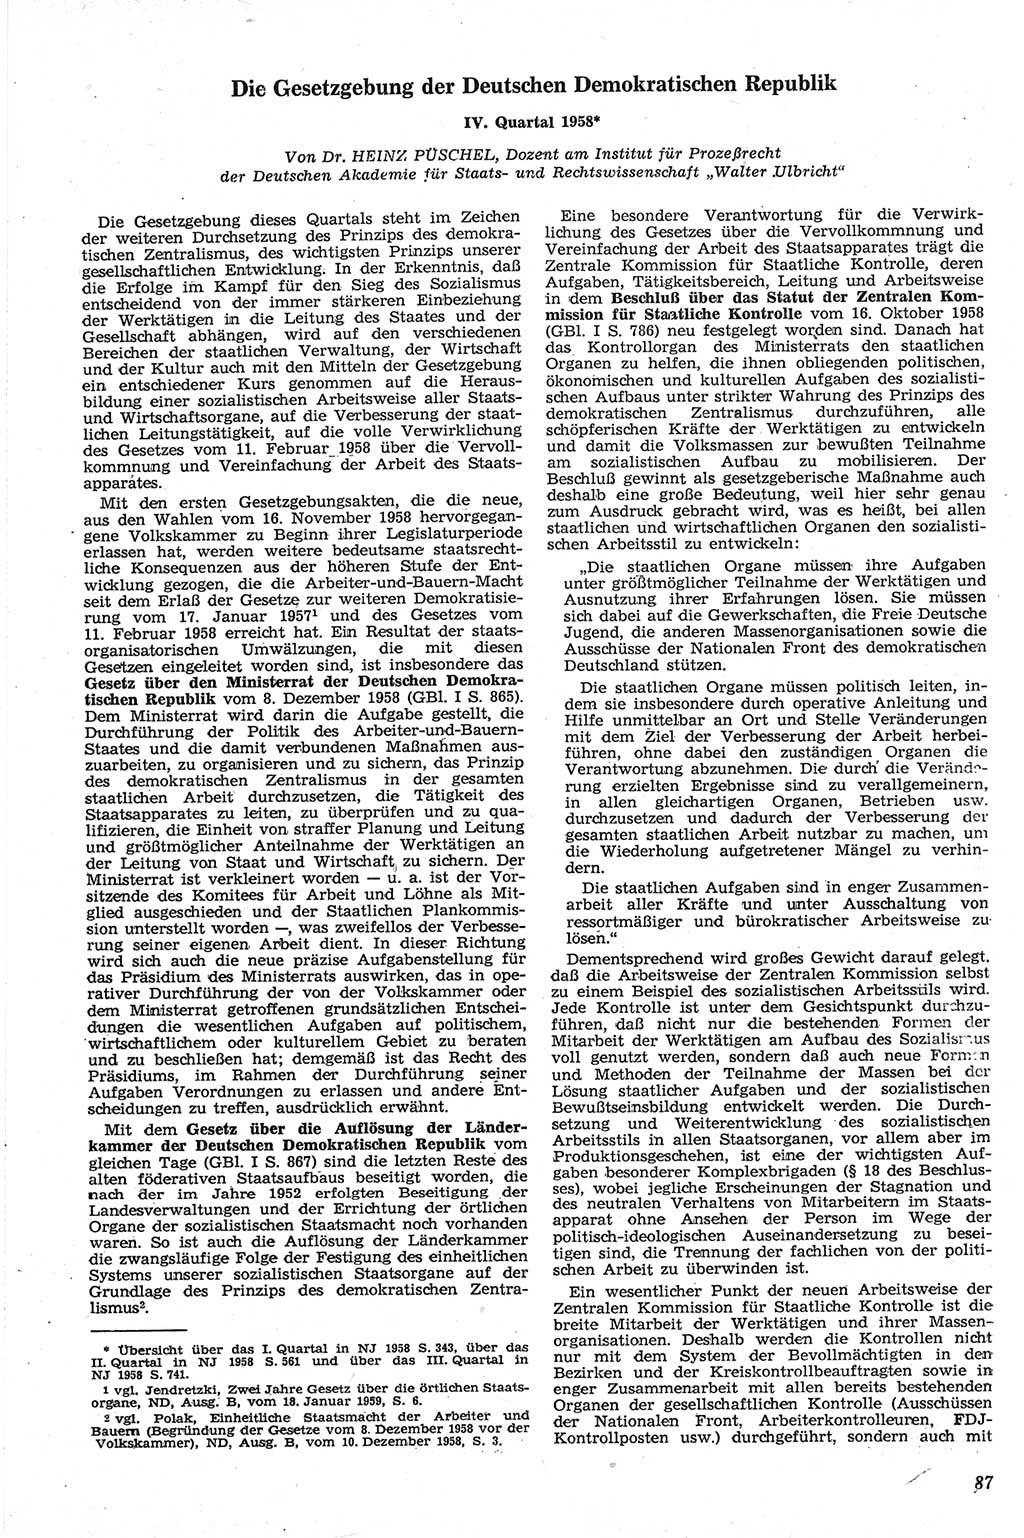 Neue Justiz (NJ), Zeitschrift für Recht und Rechtswissenschaft [Deutsche Demokratische Republik (DDR)], 13. Jahrgang 1959, Seite 87 (NJ DDR 1959, S. 87)